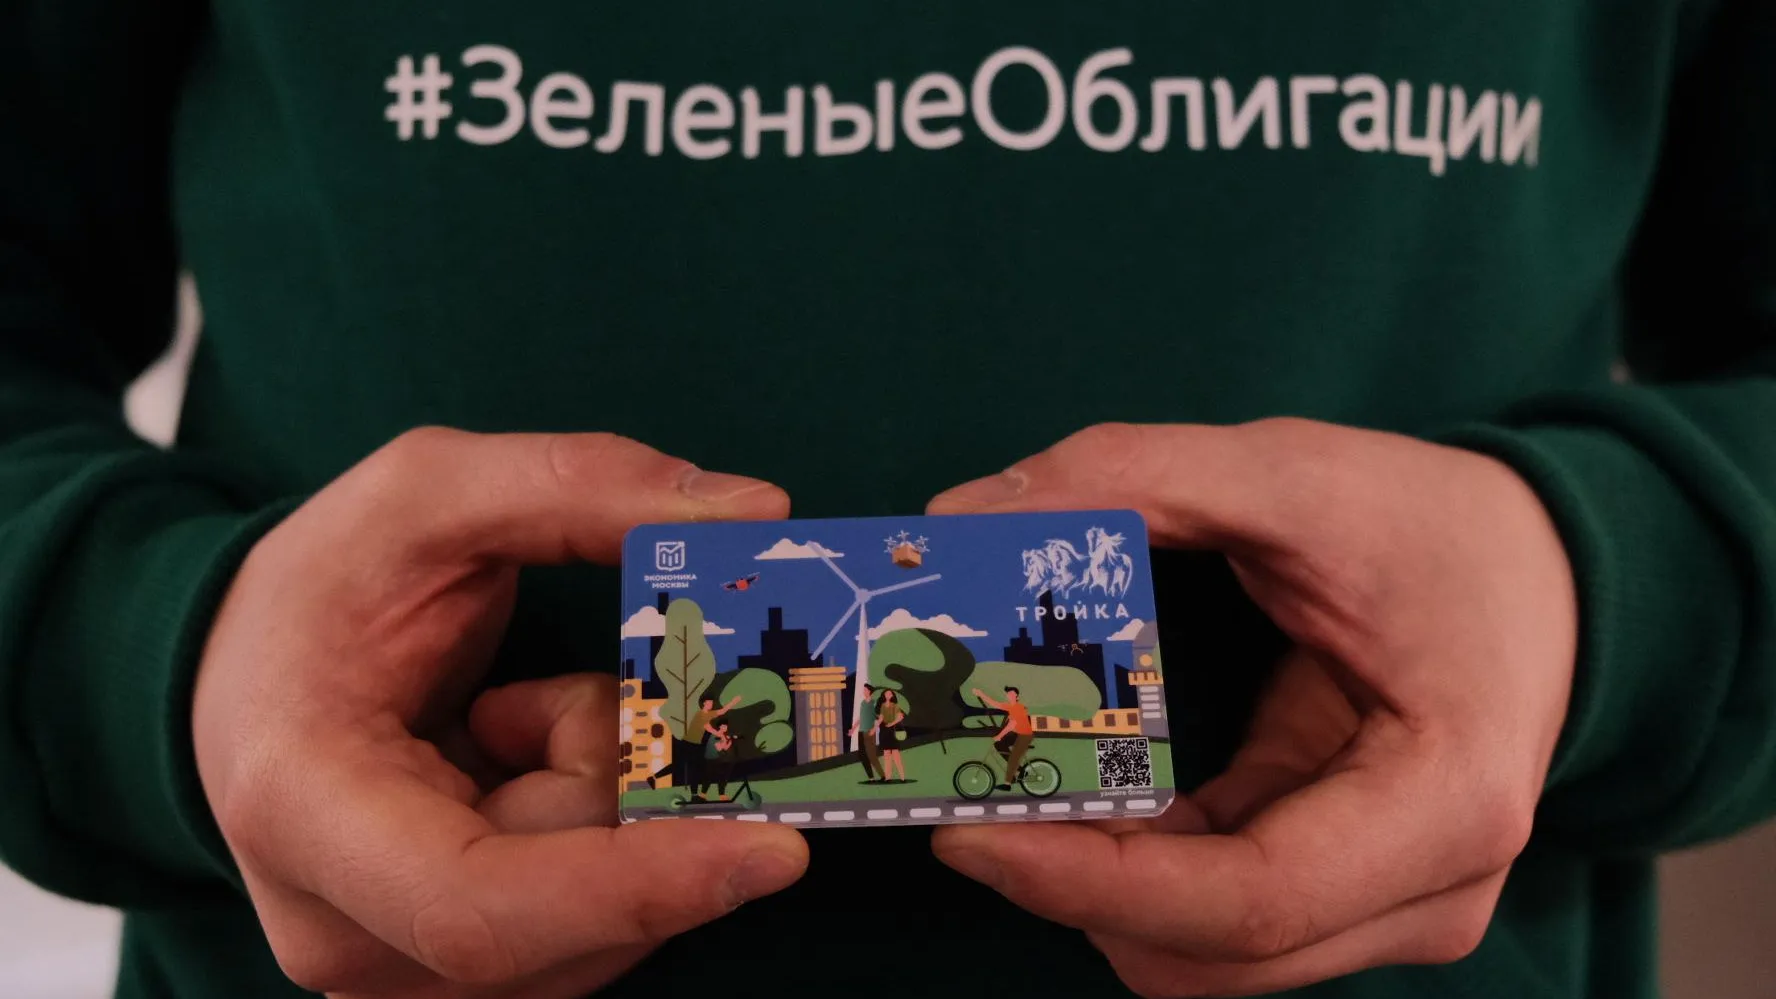 «Зеленые» облигации: для чего они нужны и как на них можно заработать в Москве